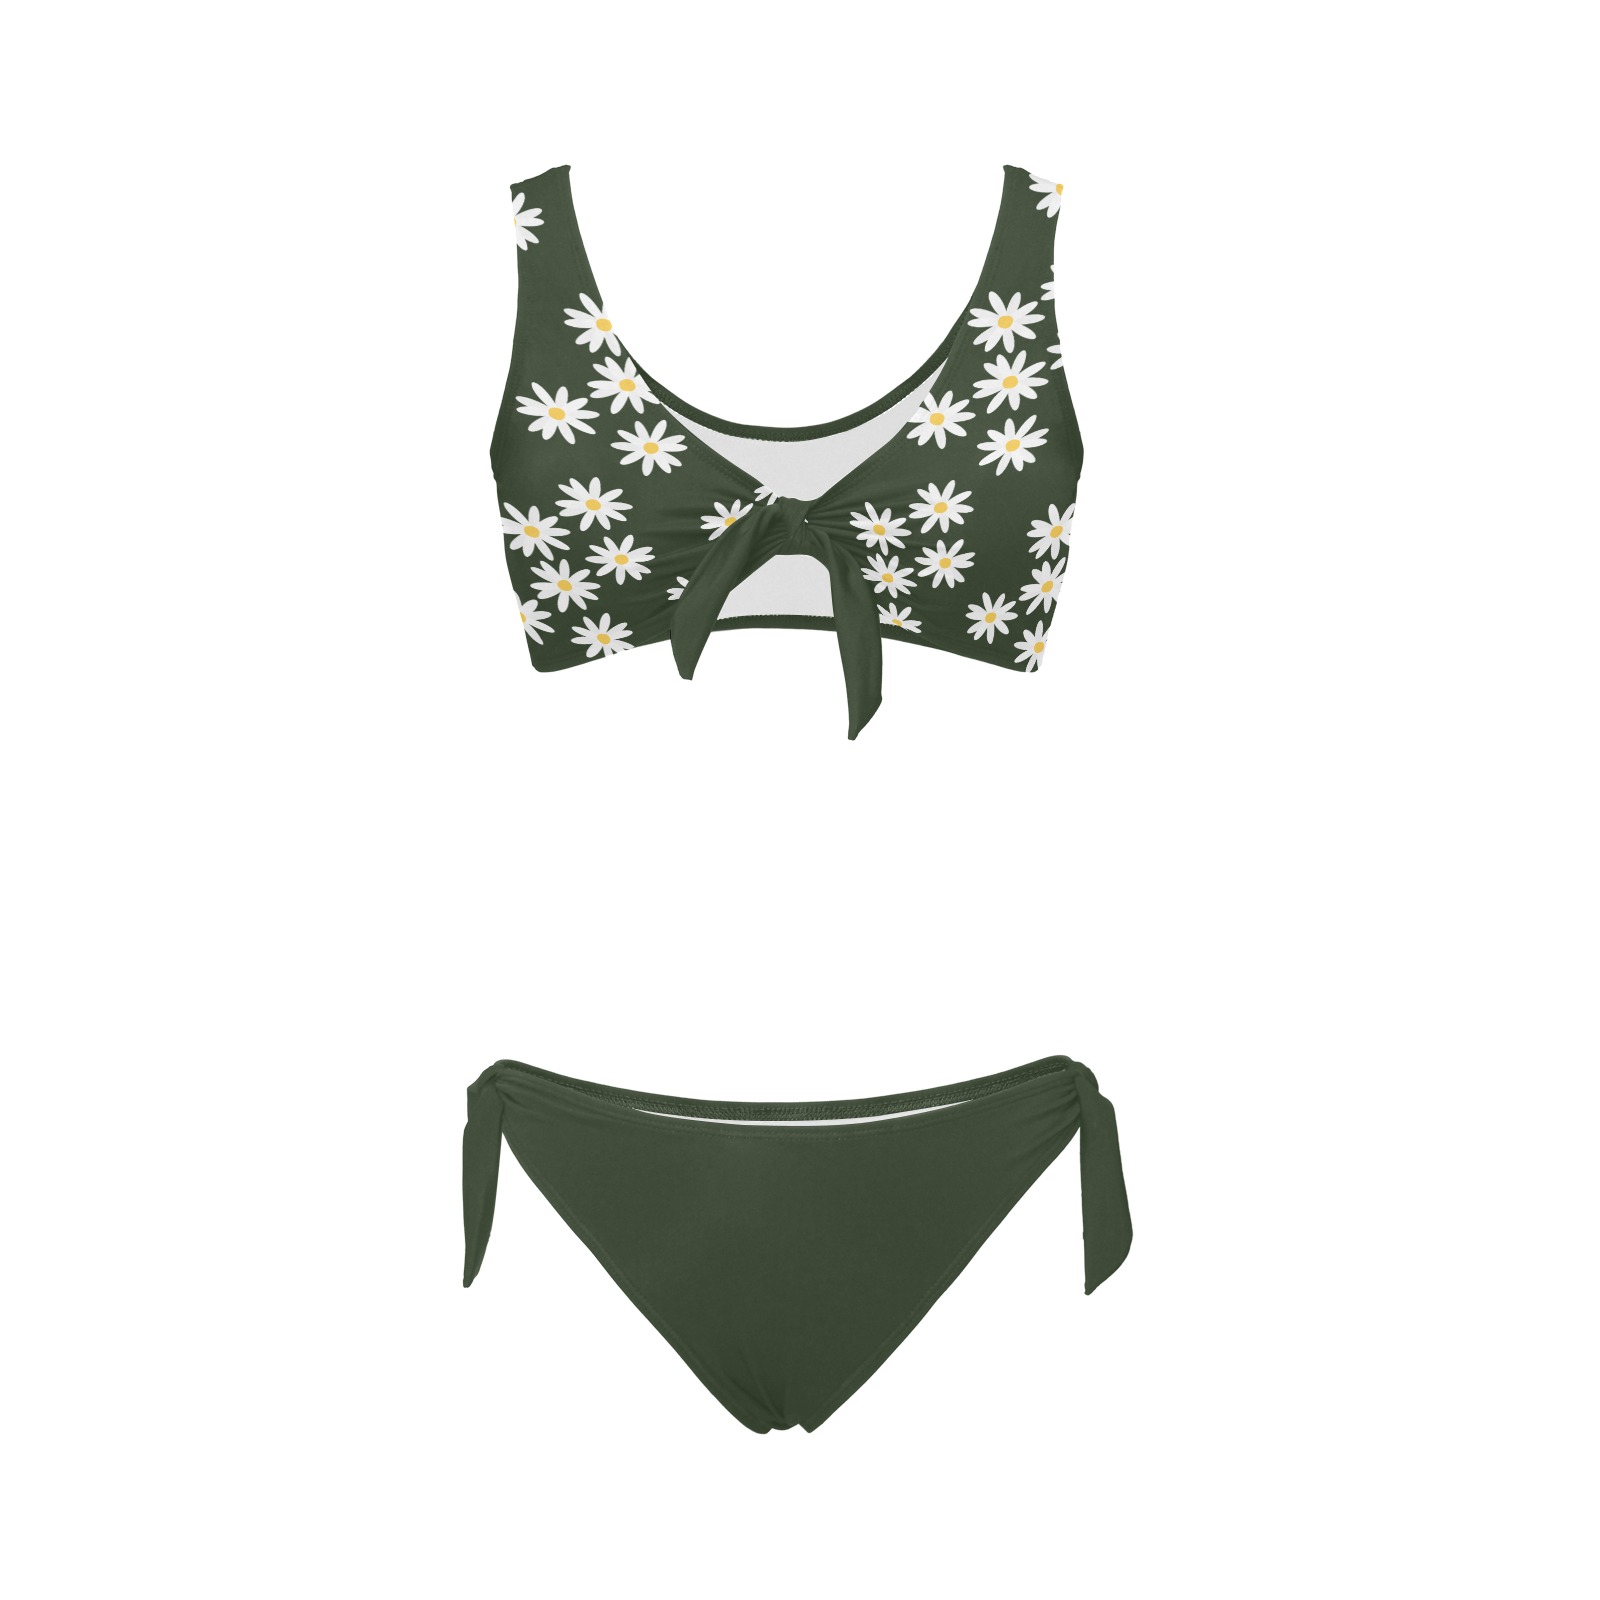 Daisy Woman's Swimwear Green Plain Bow Tie Front Bikini Swimsuit (Model S38)